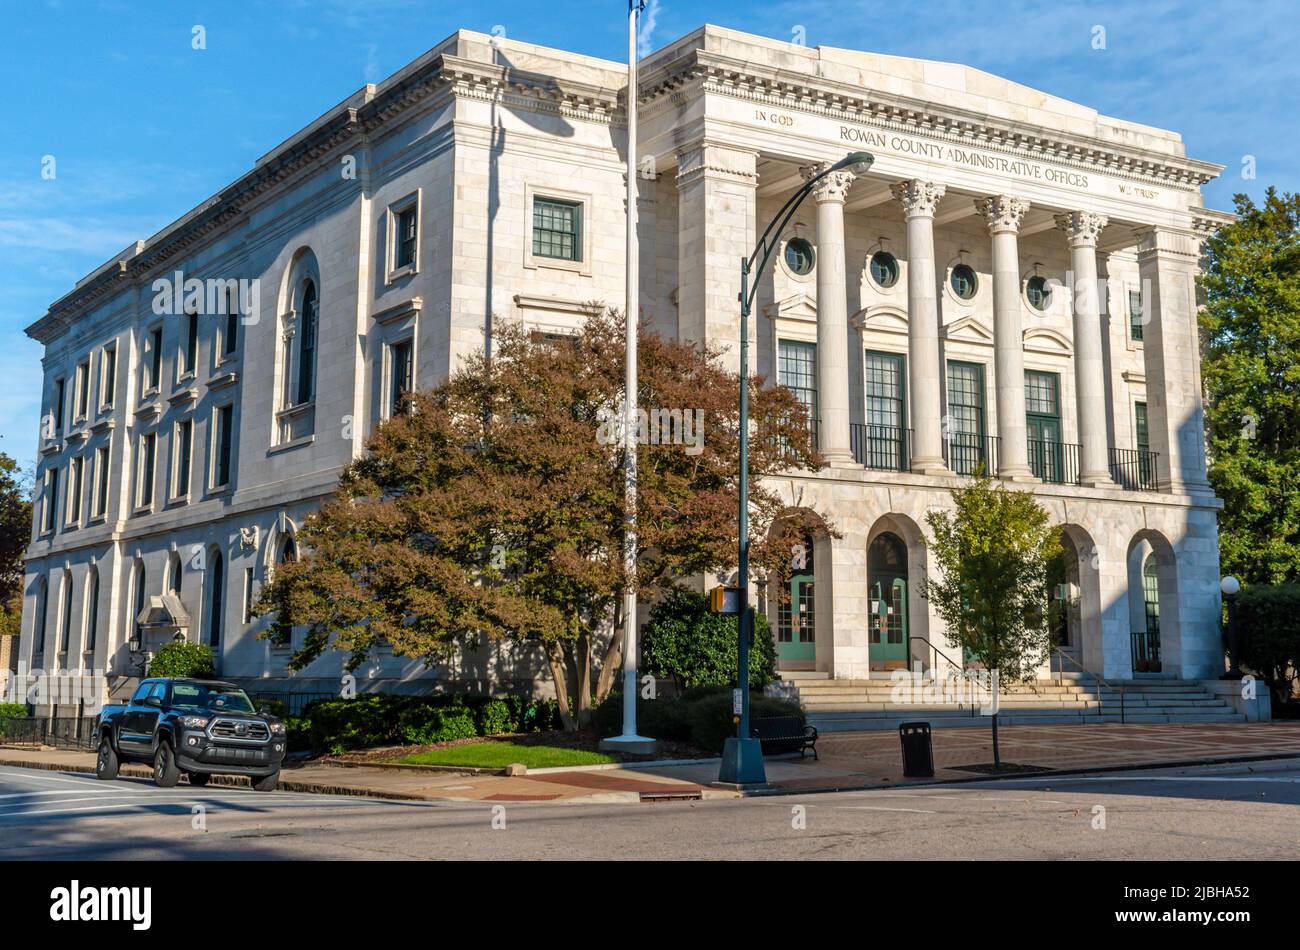 Rowan County Verwaltungsbüros Gebäude in Greco Roman Revival Architektur mit grünen Bäumen und Himmel in Salisbury, North Carolina. Stockfoto